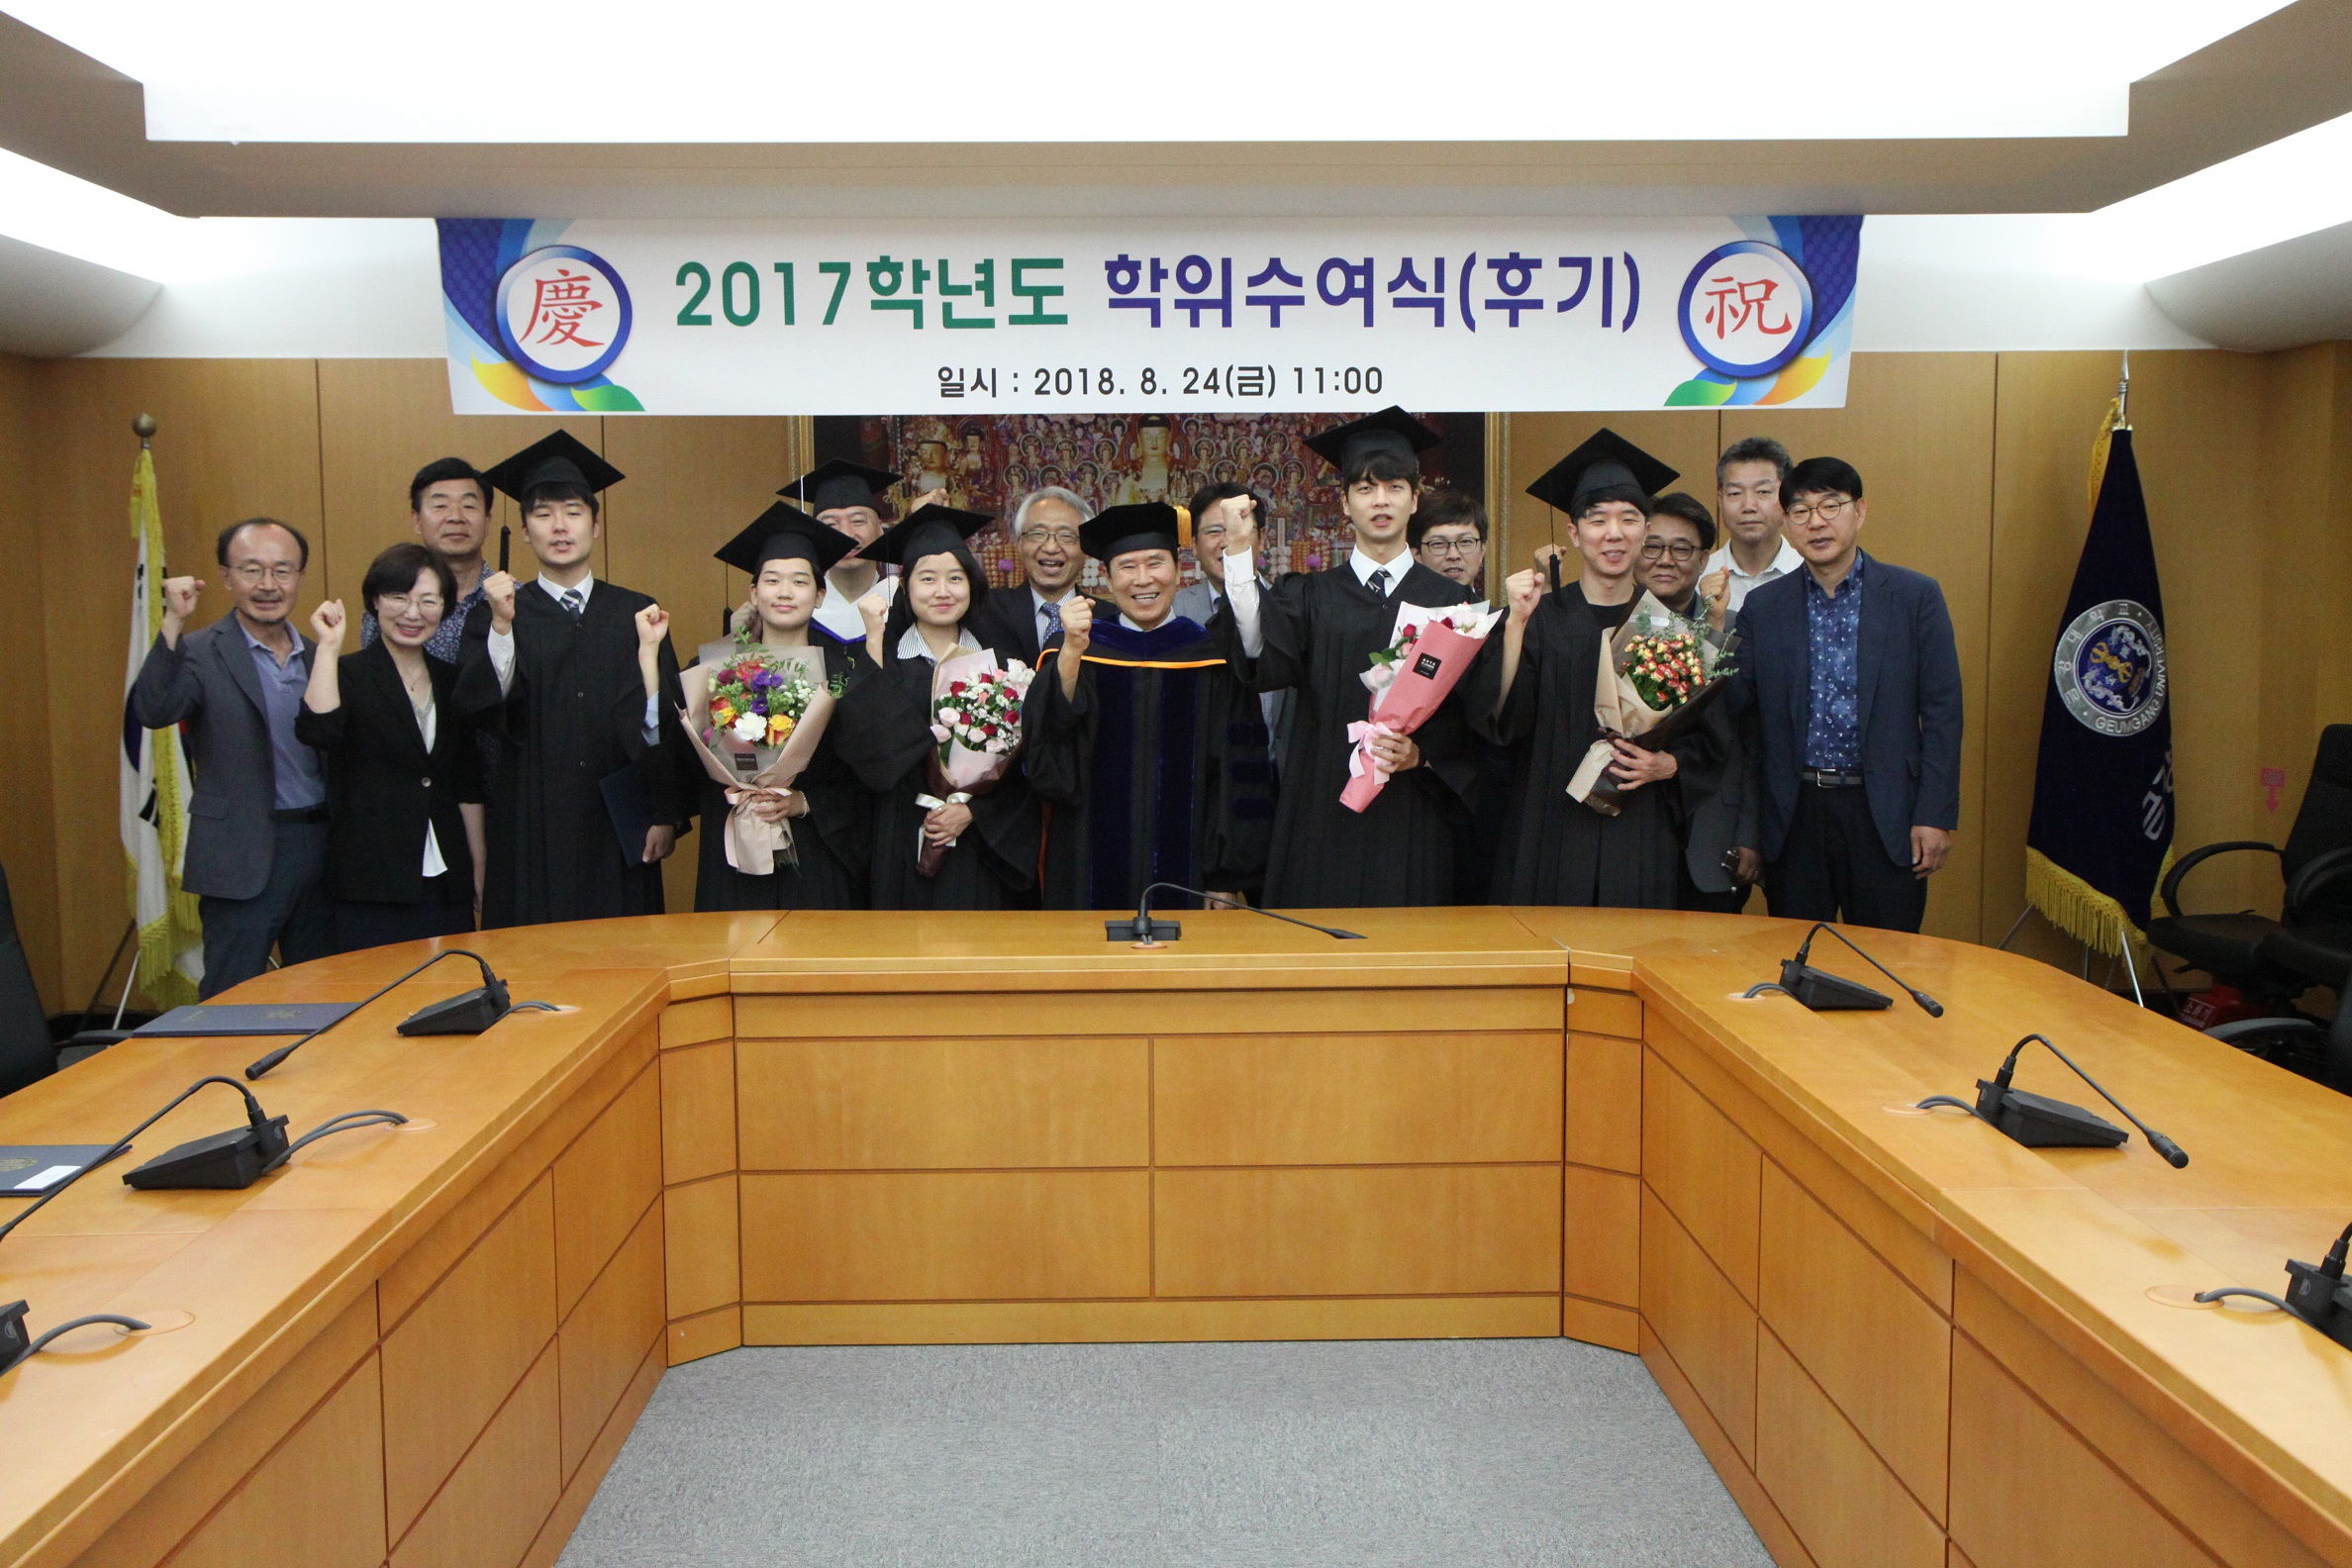 2017학년도 후기 학위수여식 개최